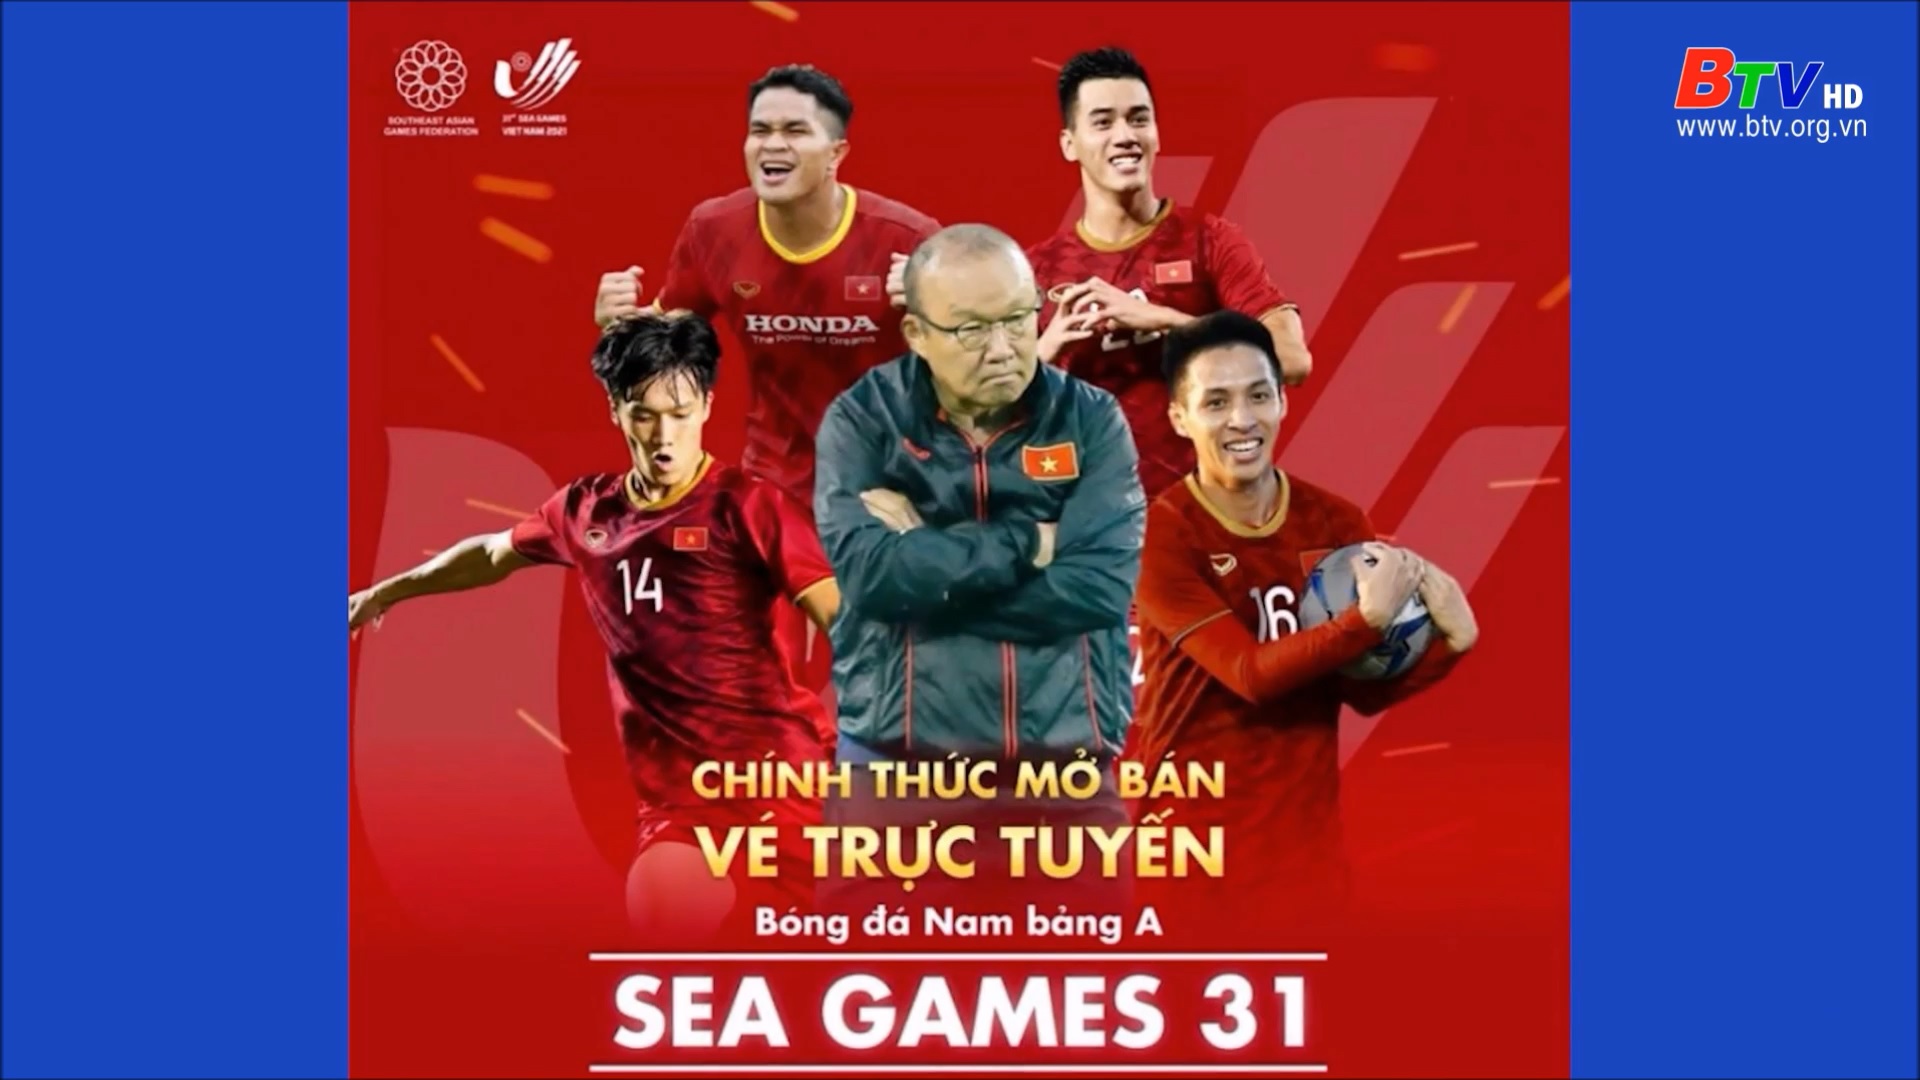 	Sốt vé xem trận U23 Việt Nam - Indonesia ở SEA Geames 31